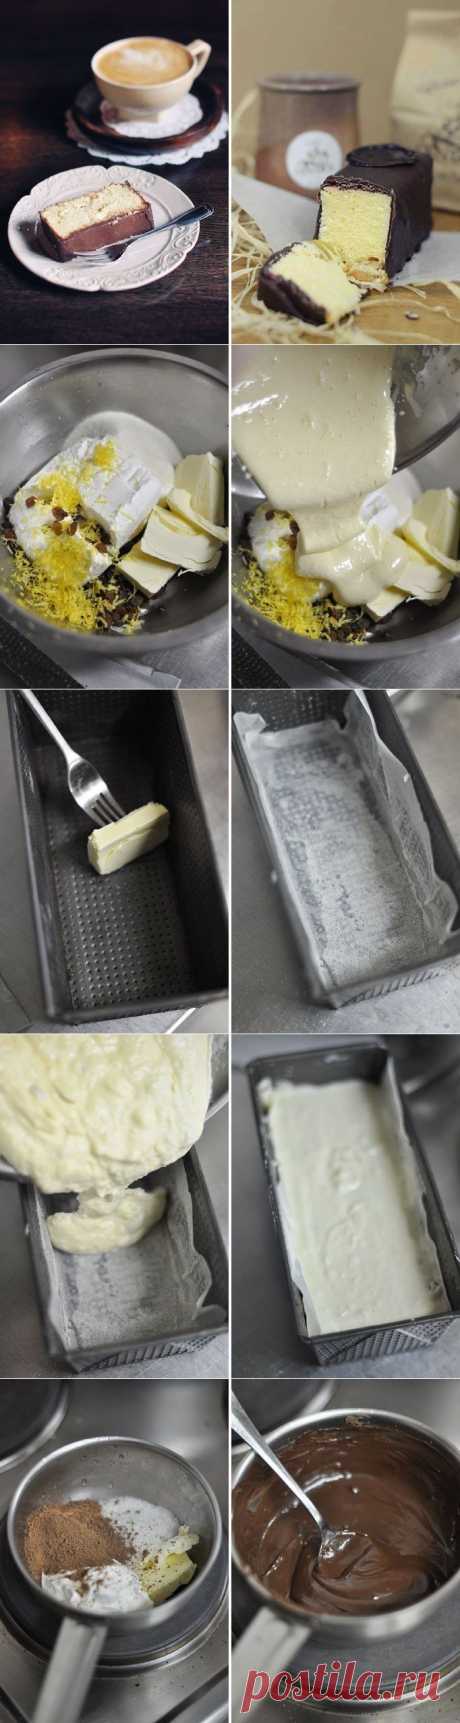 Как приготовить сырник львовский - рецепт, ингридиенты и фотографии